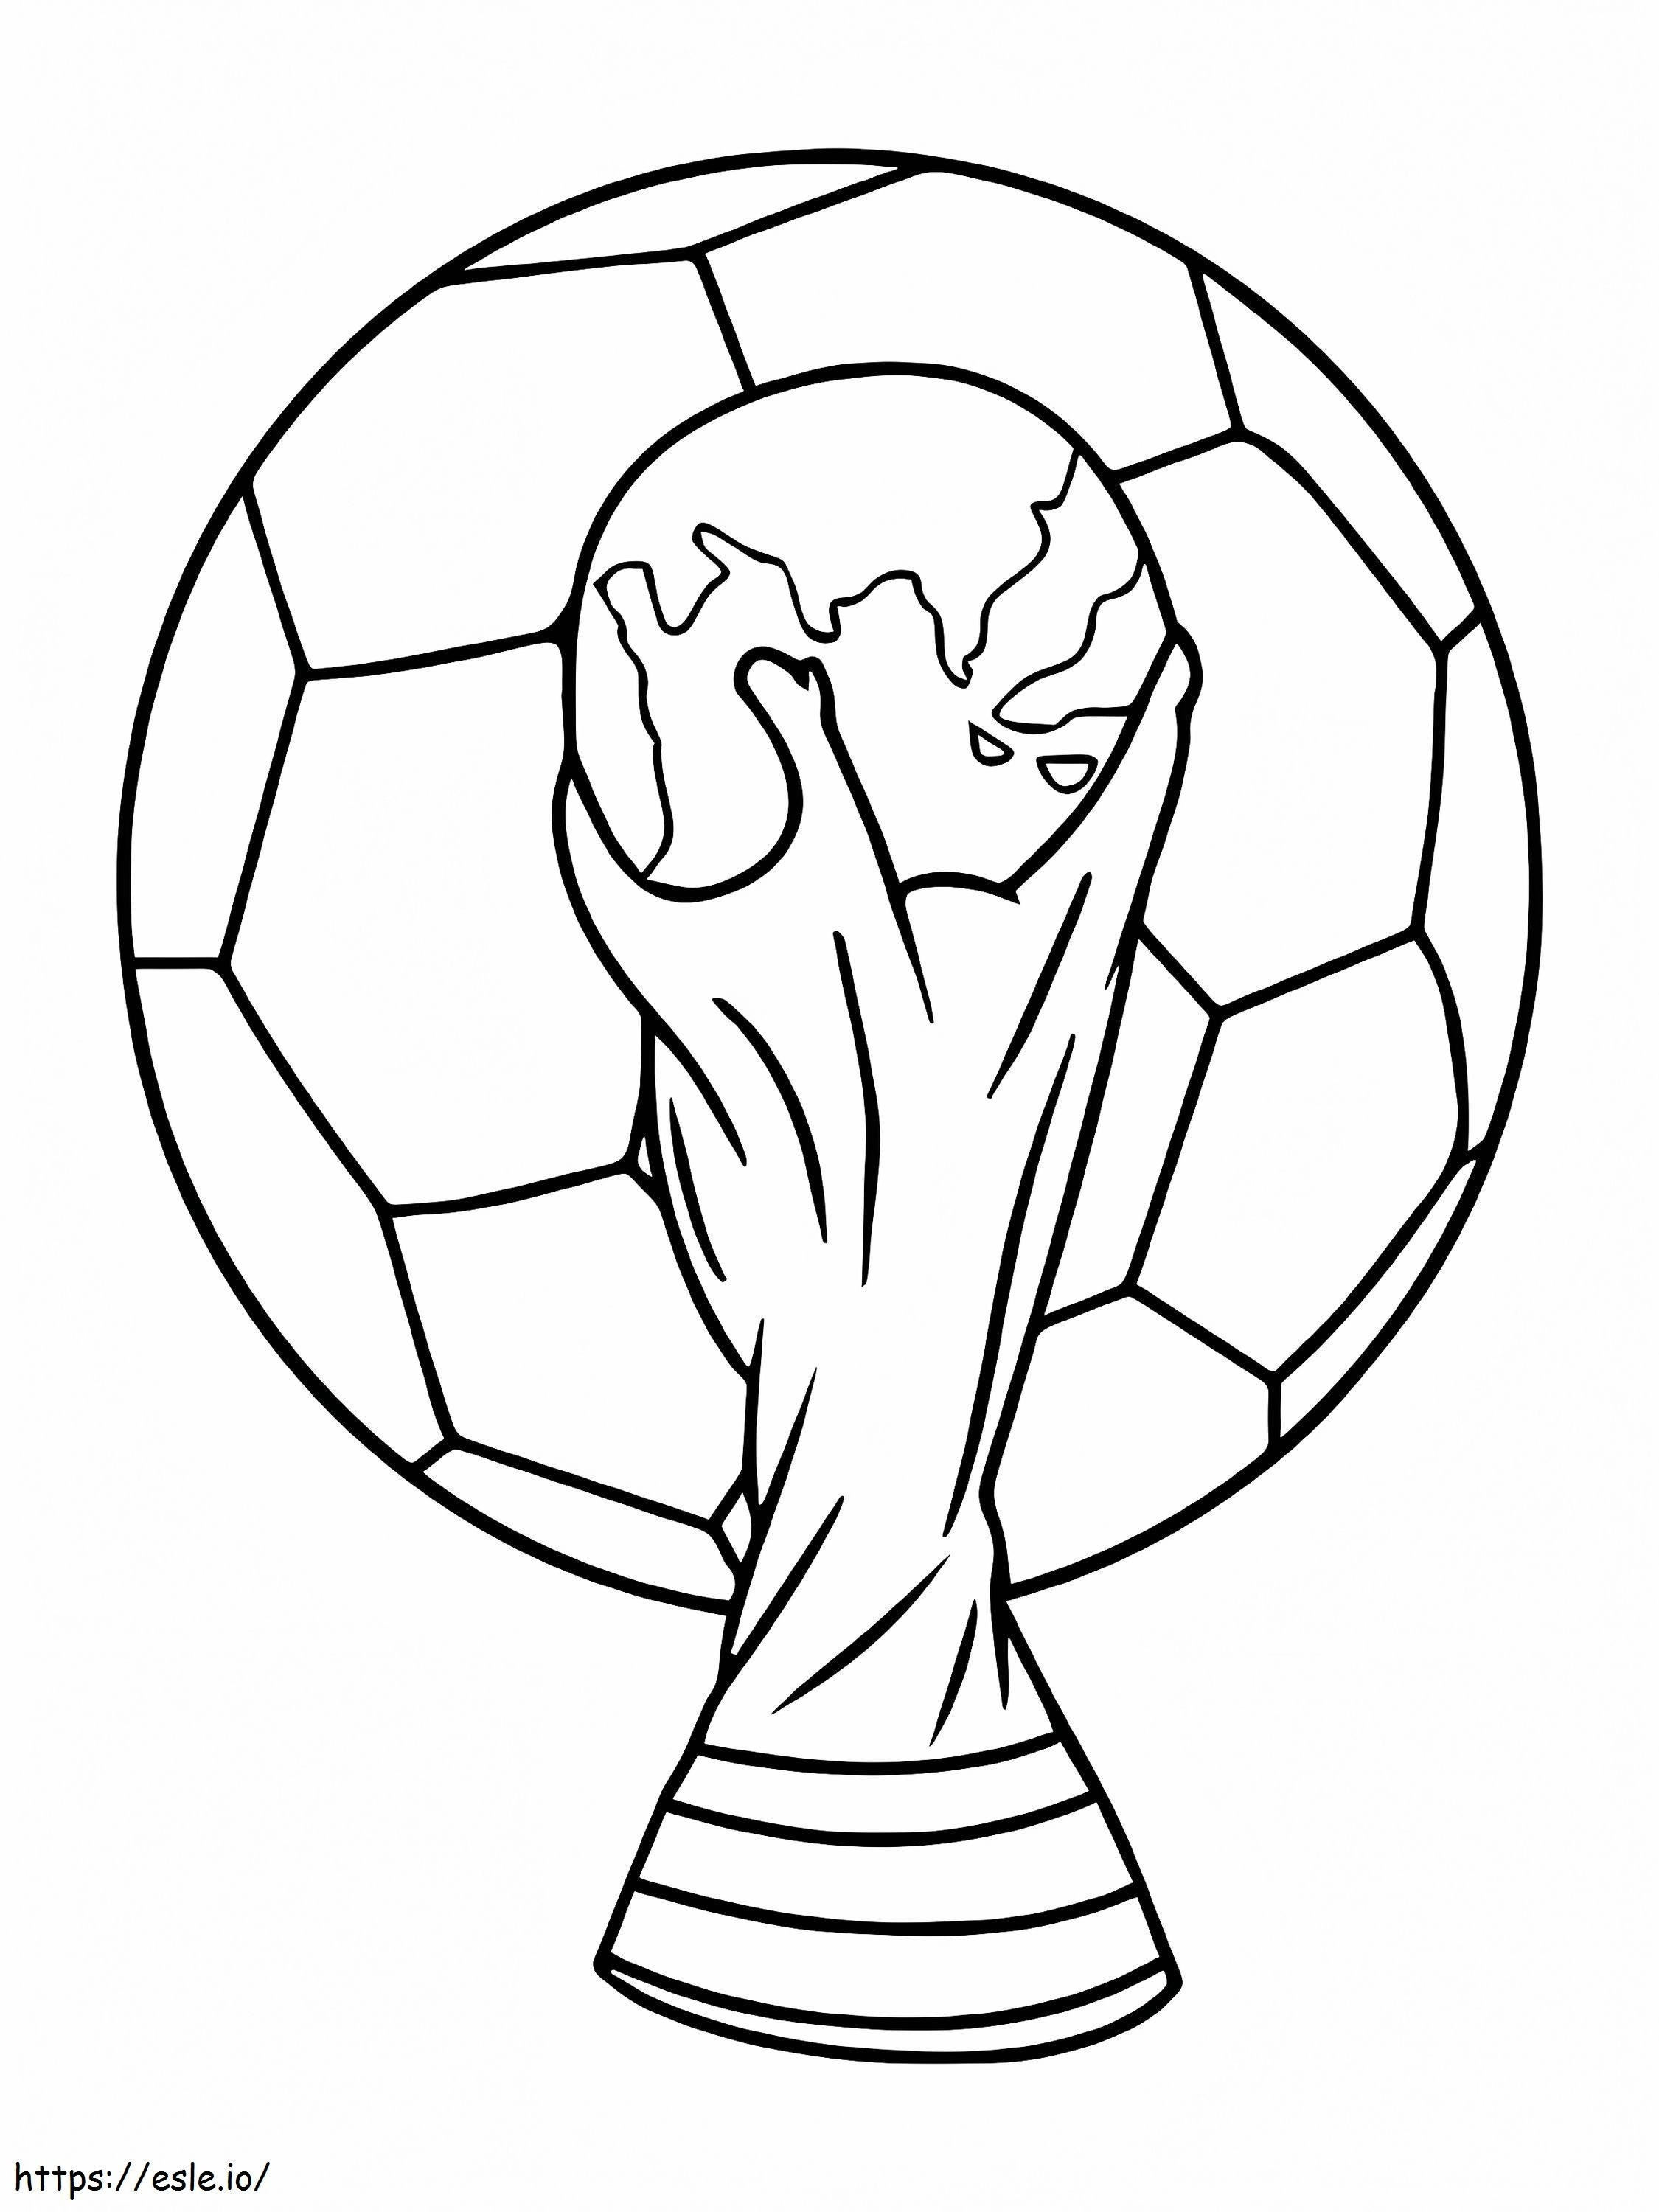 Coloriage Coupe du monde 2 à imprimer dessin